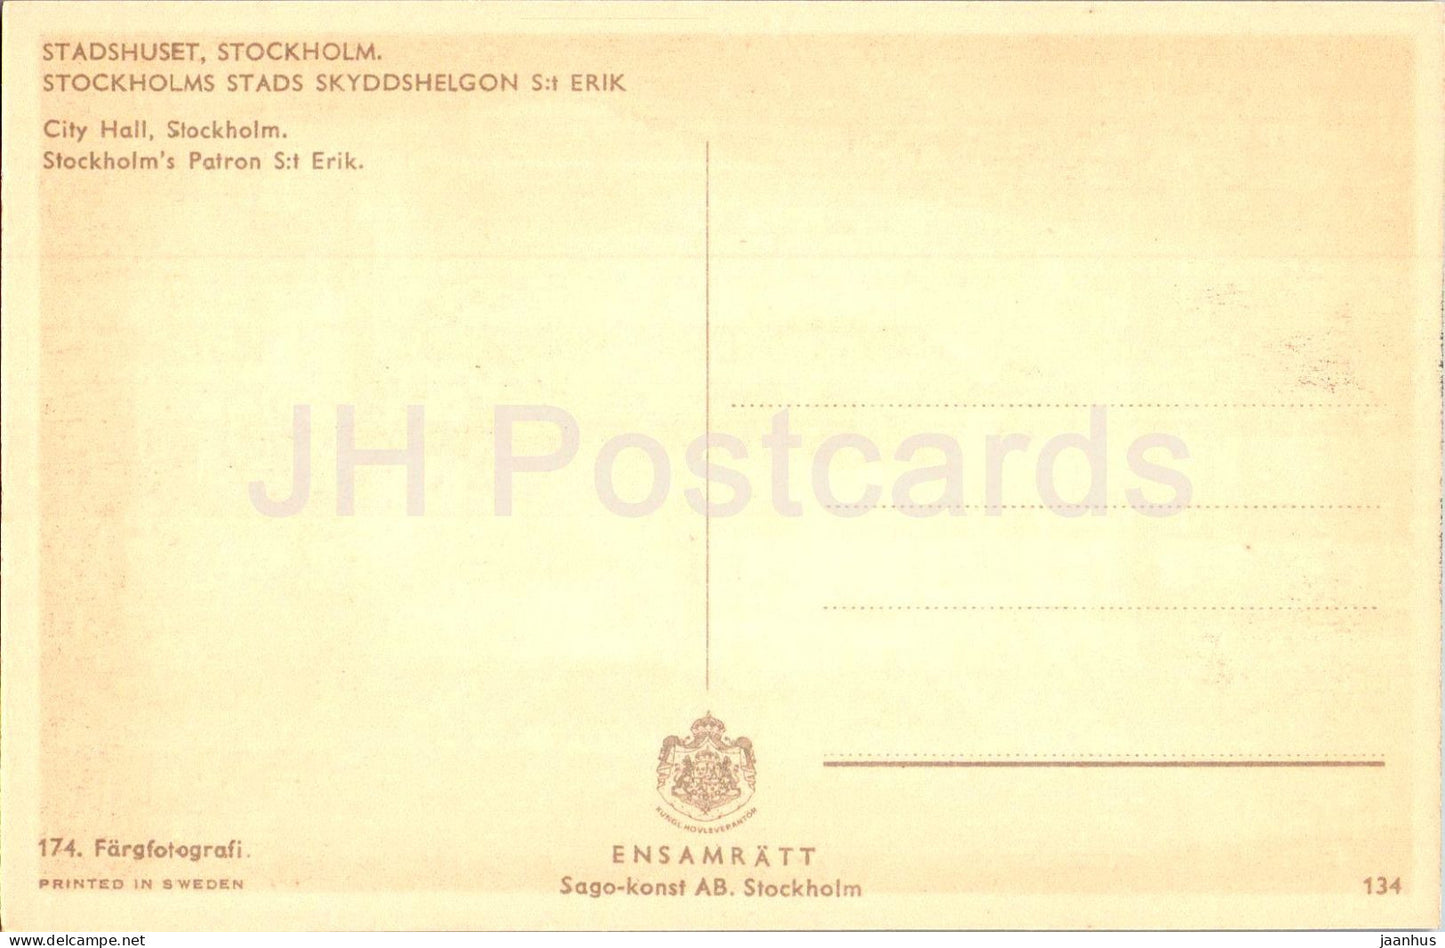 Stockholm - Stadshuset - Stockholms stads Skyddshelgon St Erik - patron - 134 - carte postale ancienne - Suède - inutilisé 